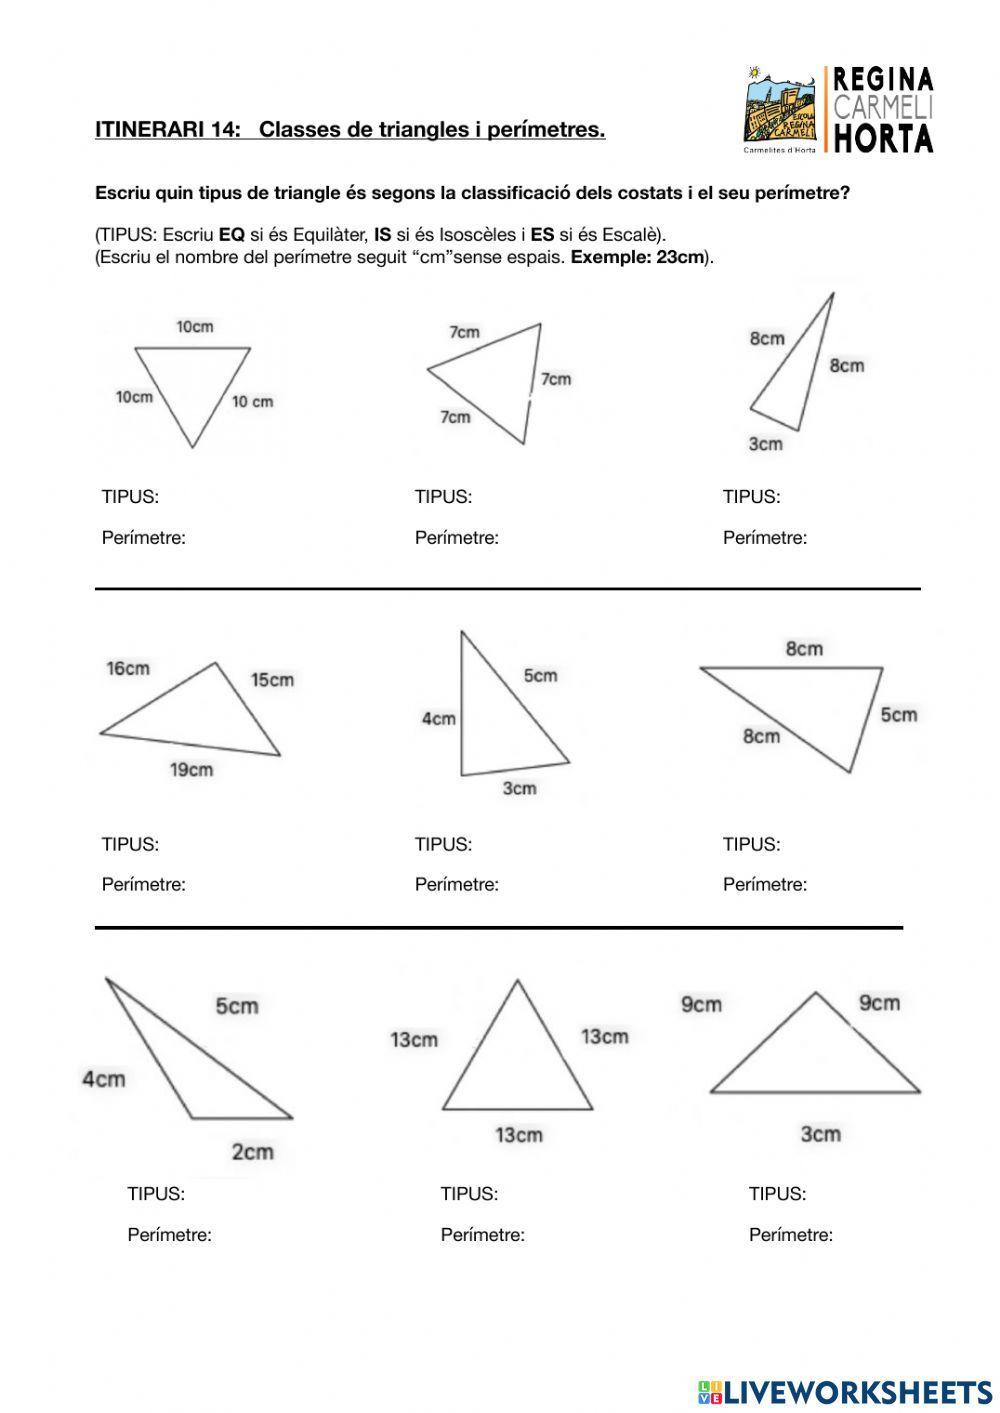 Classificació de triangles i perímetres